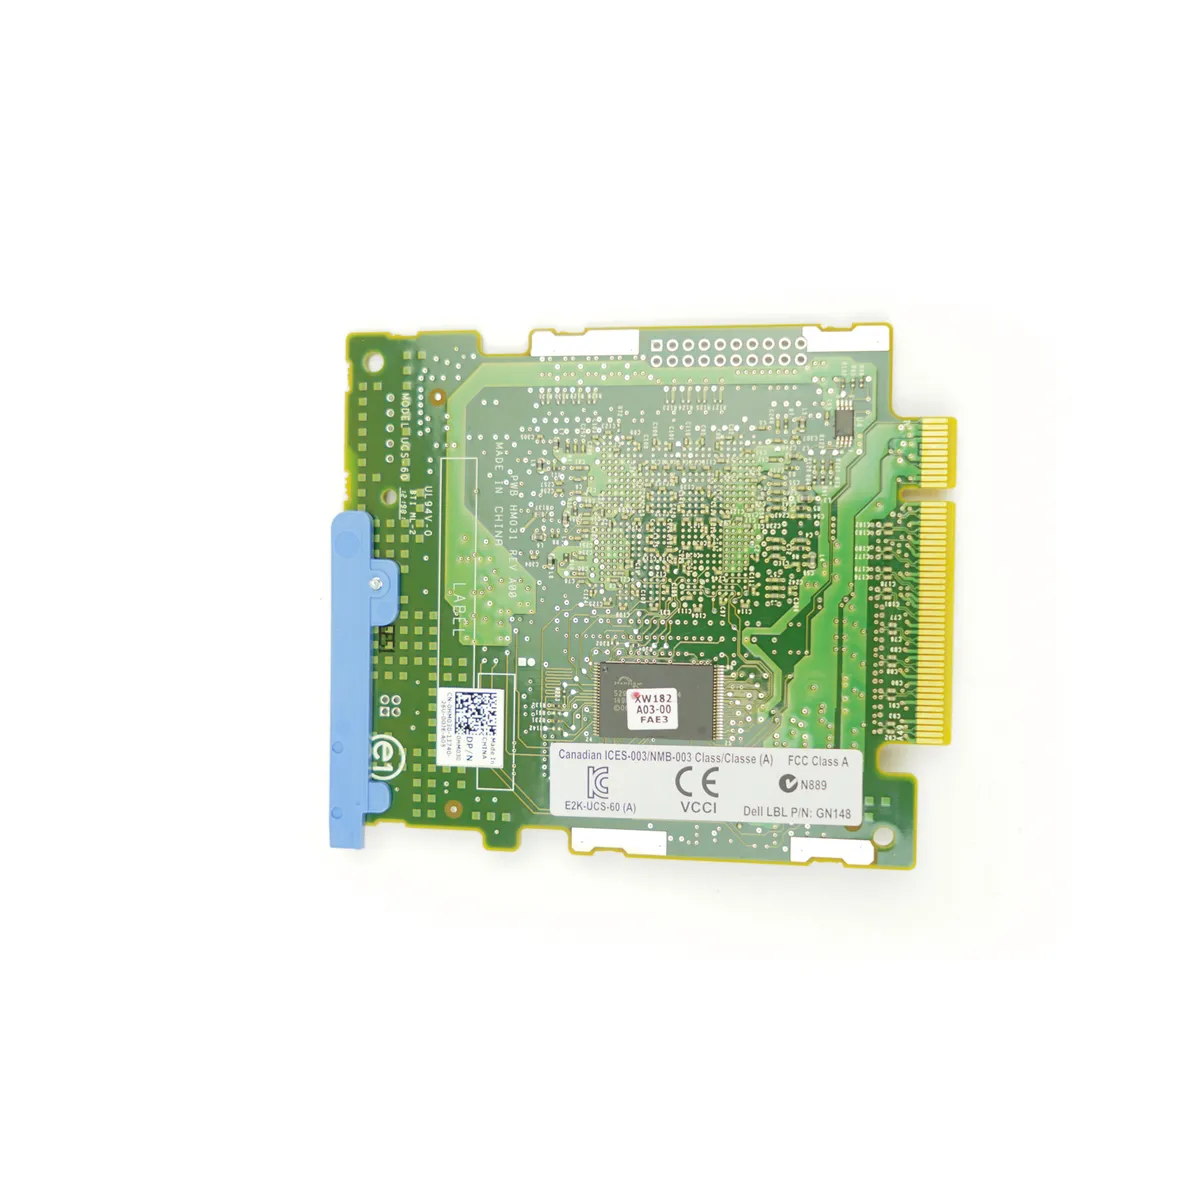 Dell SAS 6/iR 10G - Blade RAID Controller Card